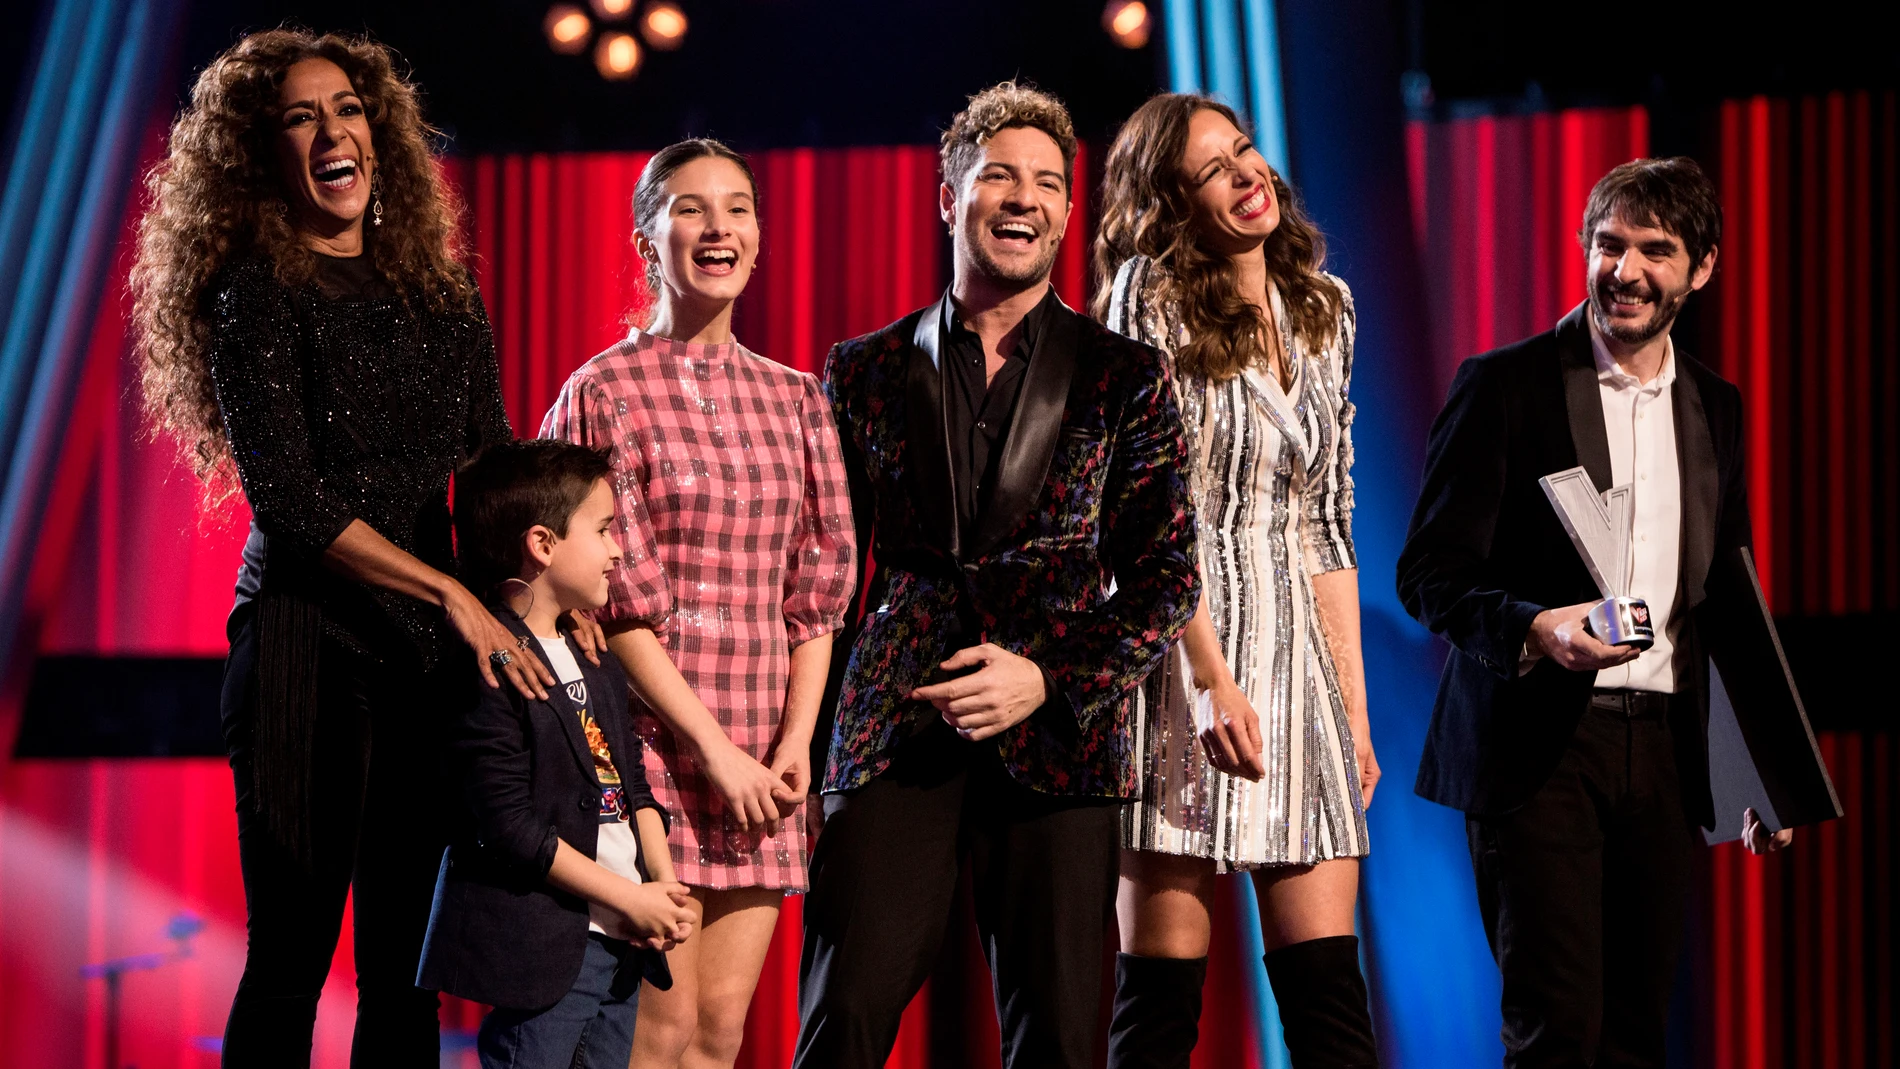 Artistas como Alejandro Sanz caen rendidos ante la Gran Final de 'La Voz Kids': "Viva la vida y viva la música"